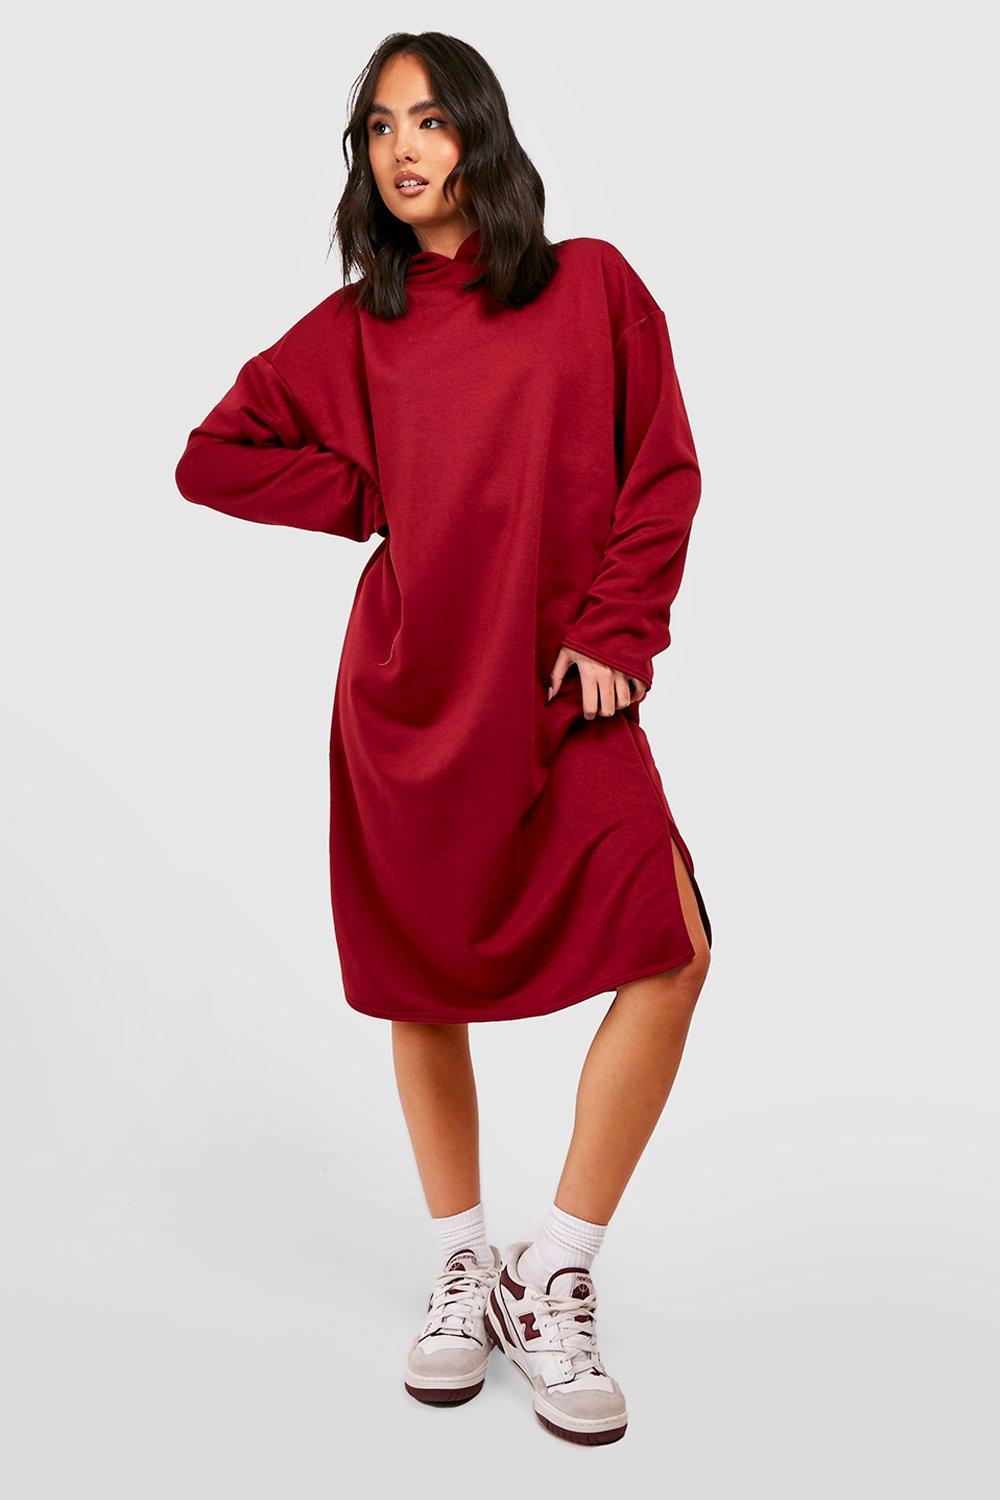 Oversized Lång Sweatshirtklänning Med Huva, Red